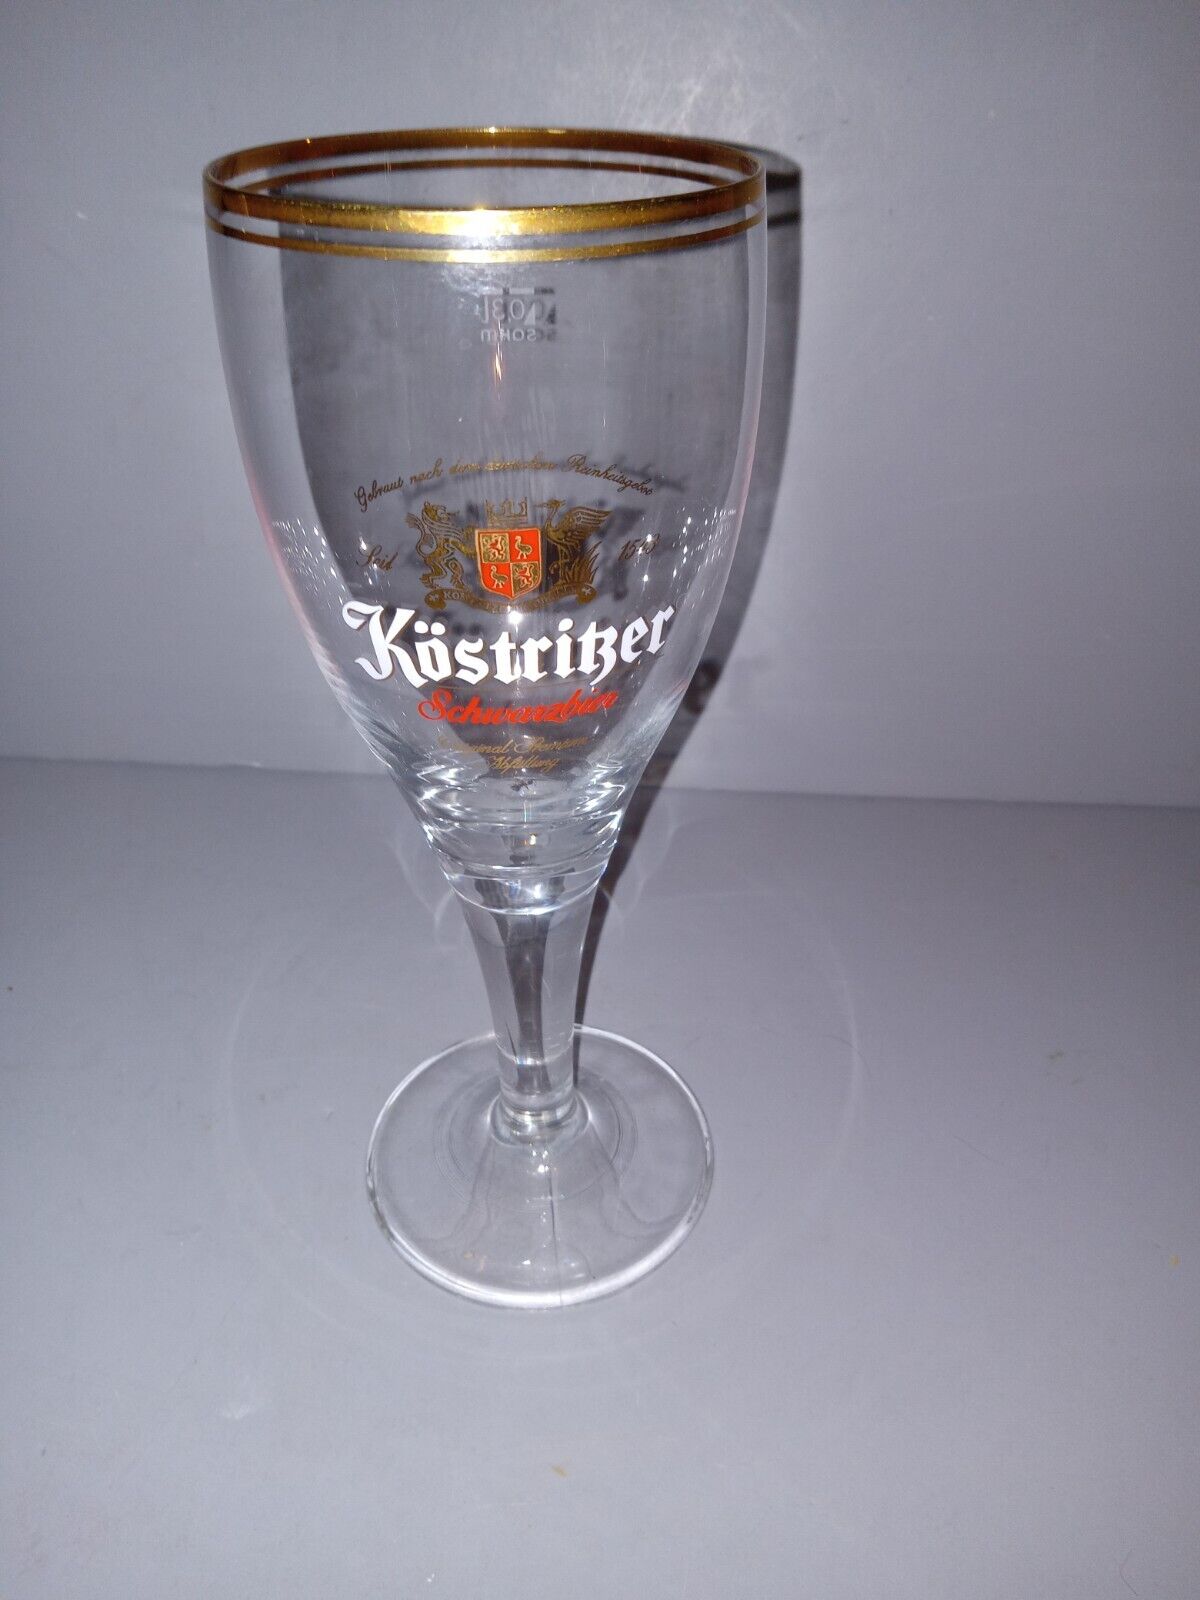 Kostritzer Stemmed Beer Glass .3 Liter Schwarzbier